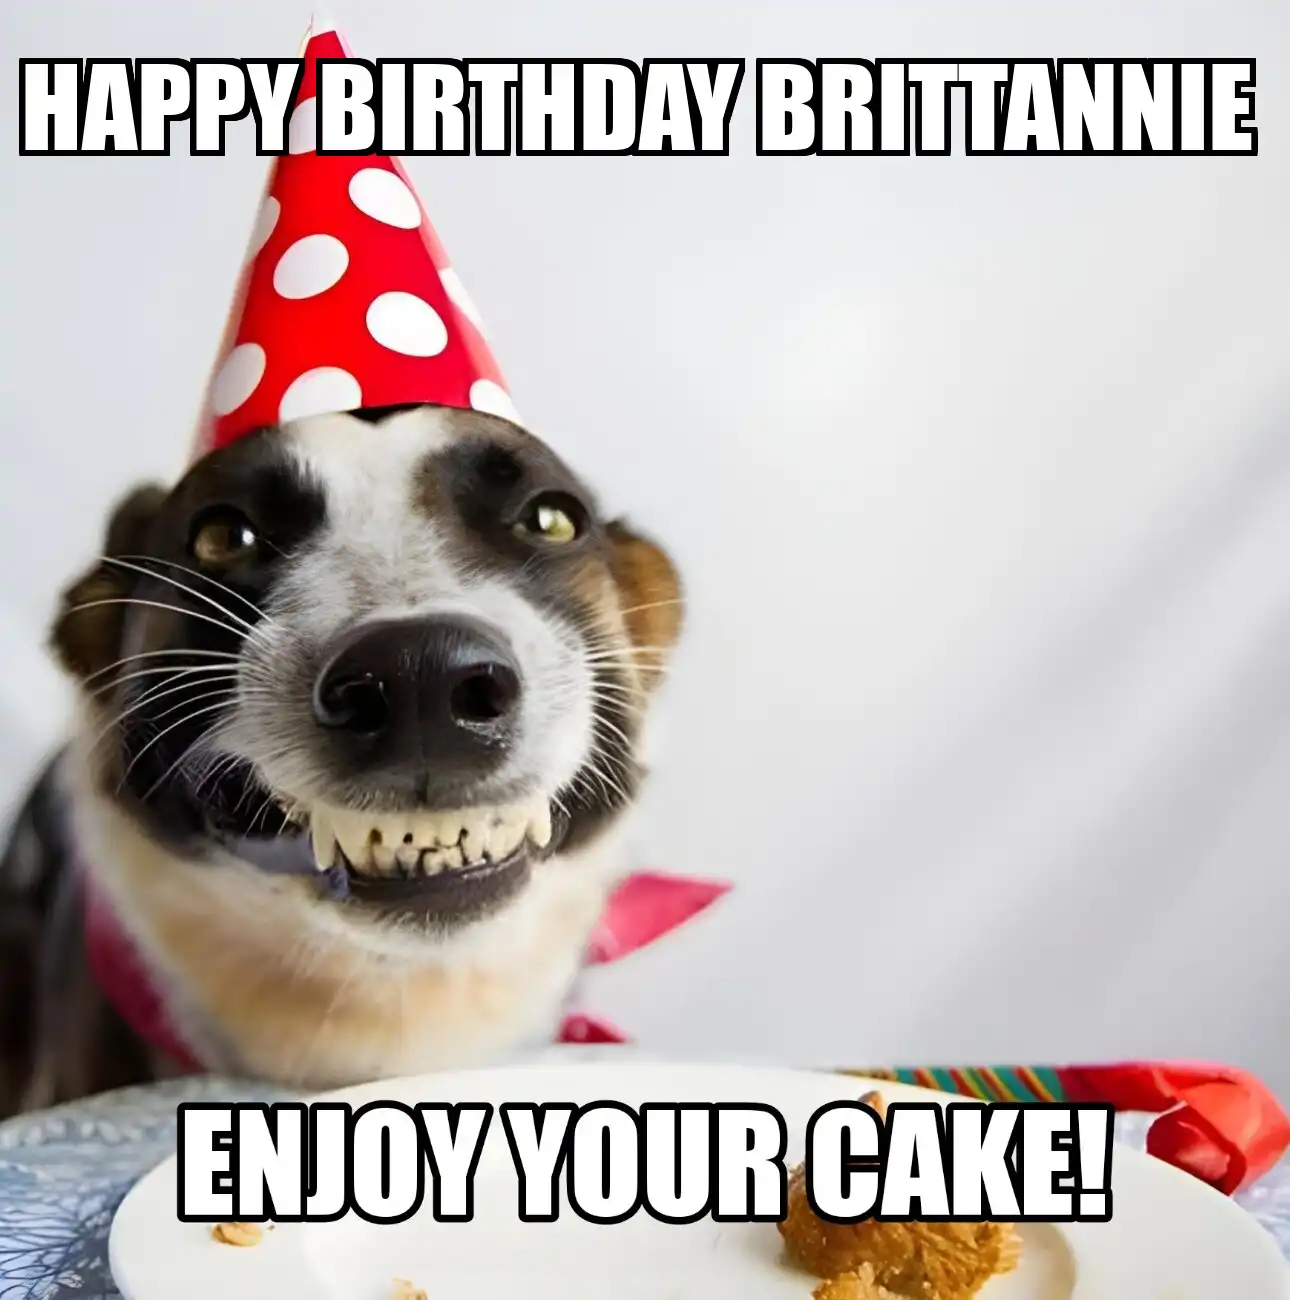 Happy Birthday Brittannie Enjoy Your Cake Dog Meme